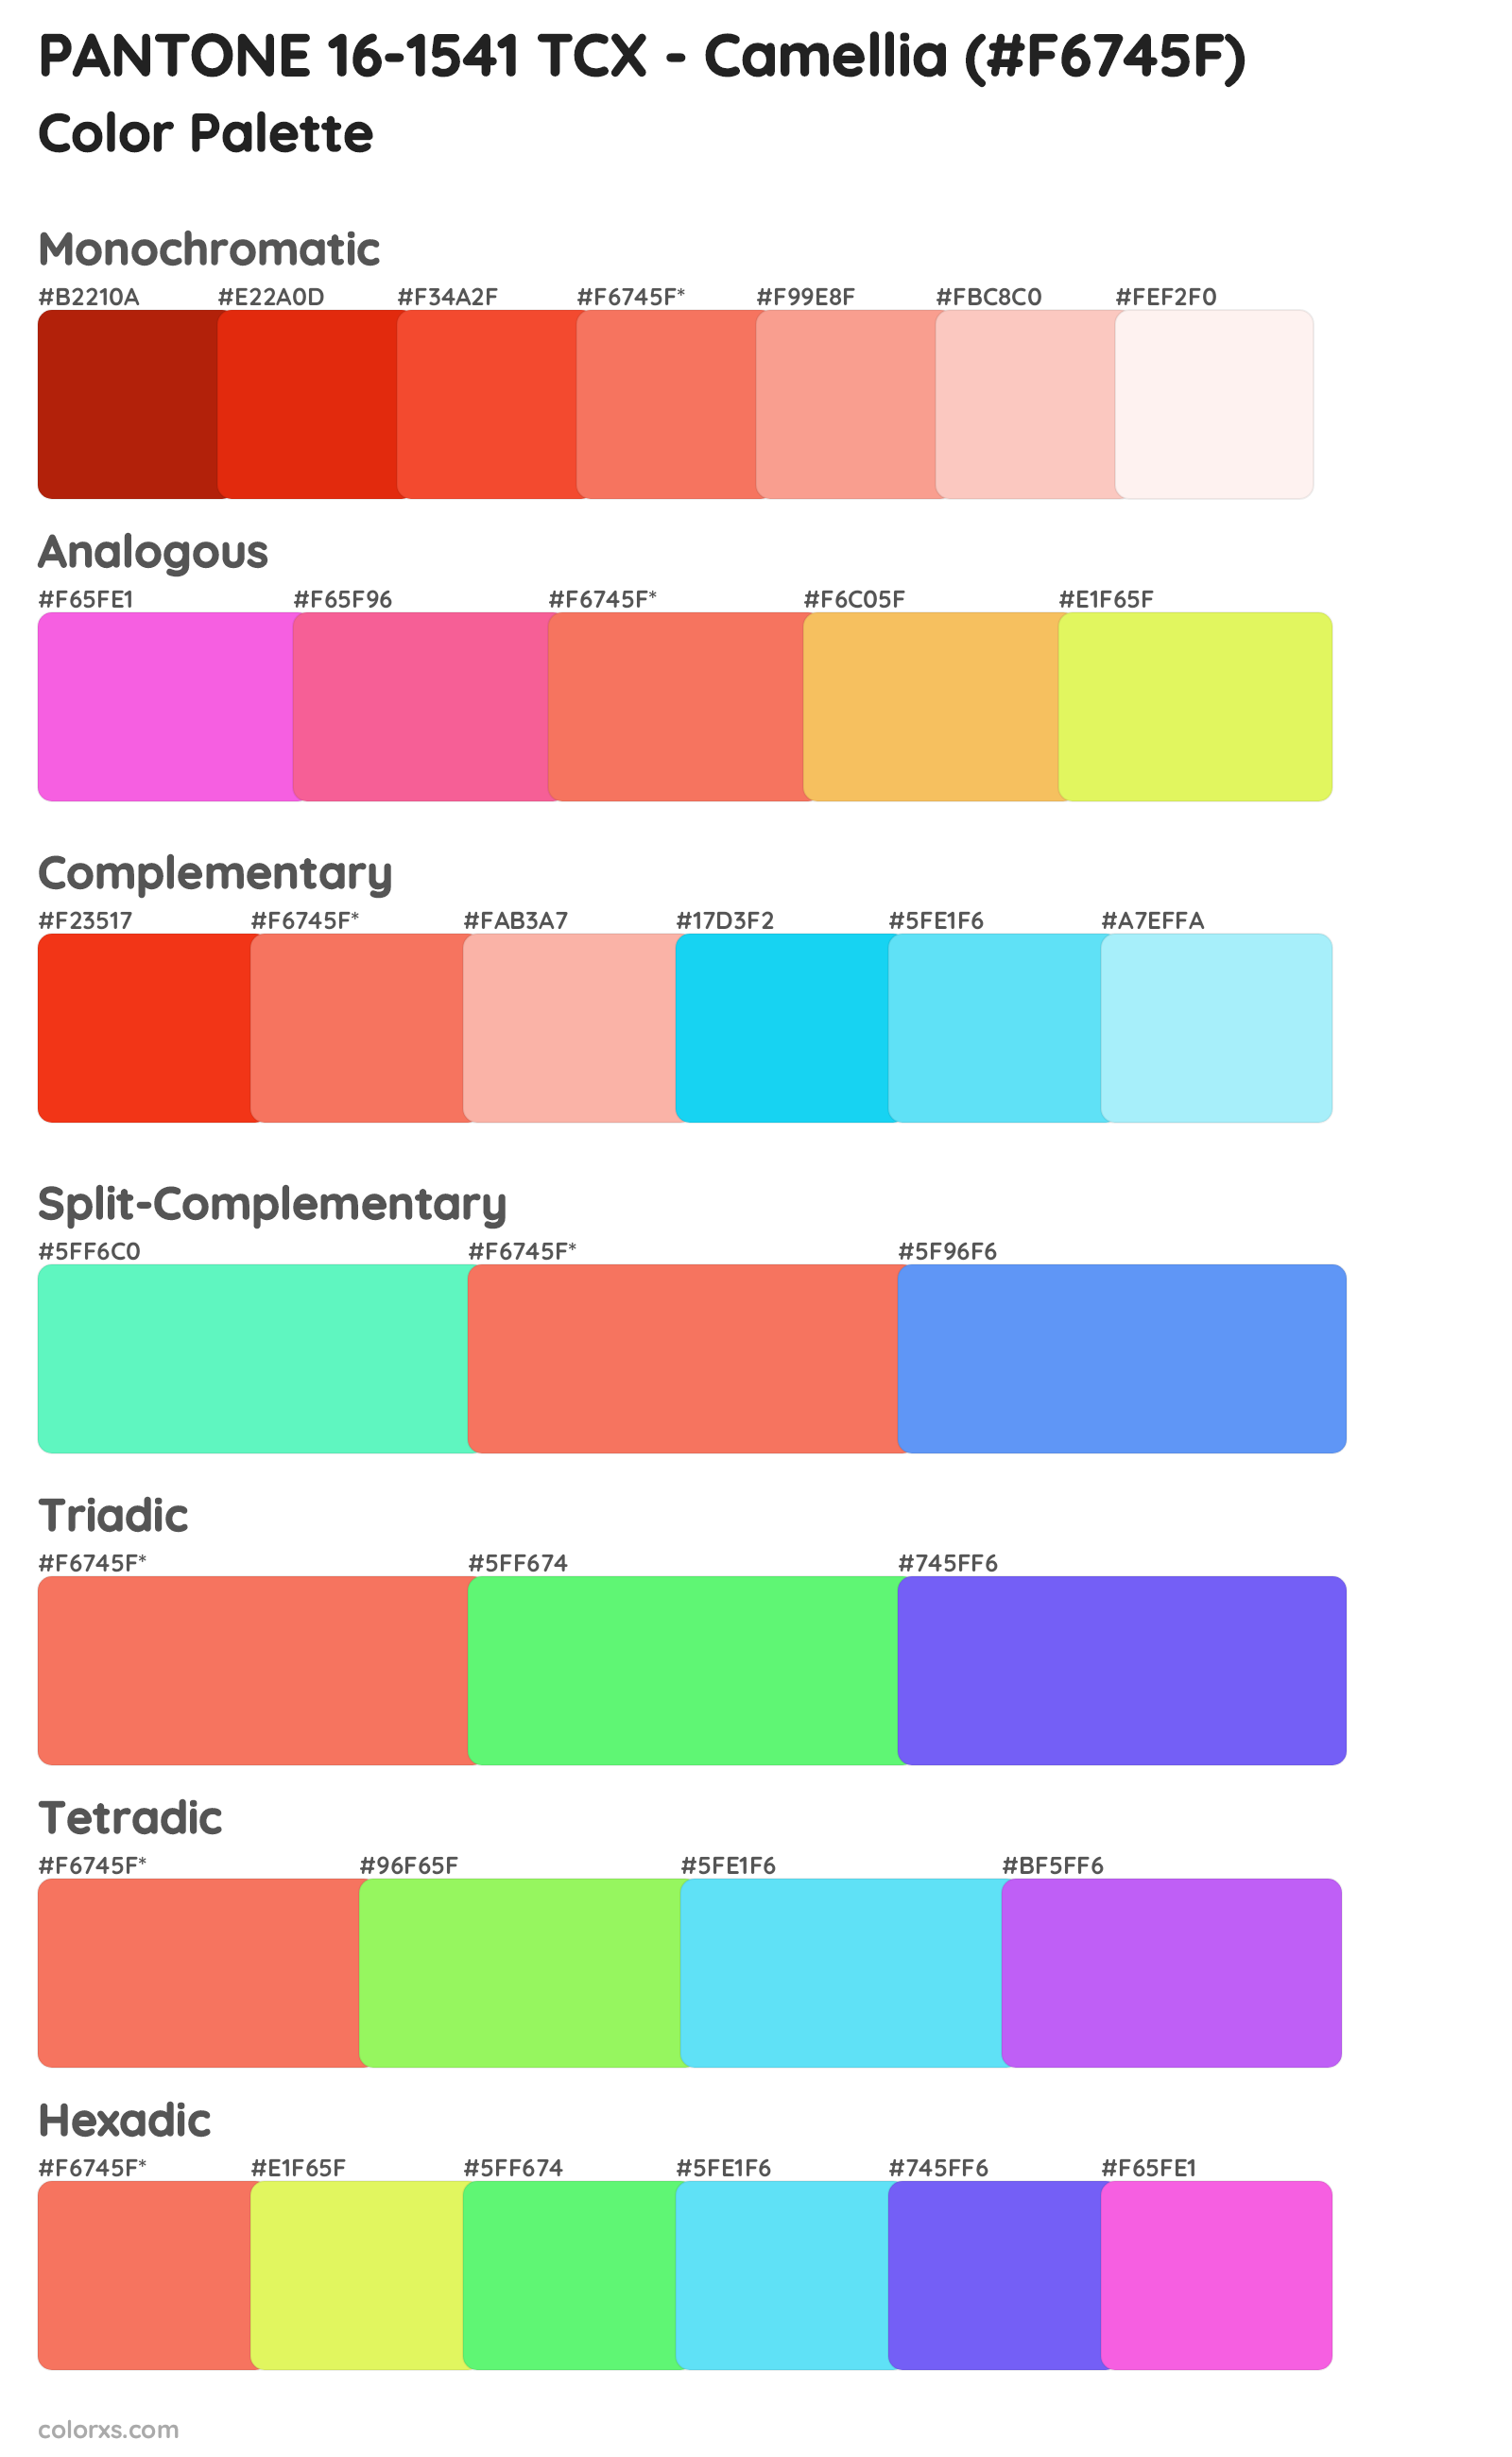 PANTONE 16-1541 TCX - Camellia Color Scheme Palettes